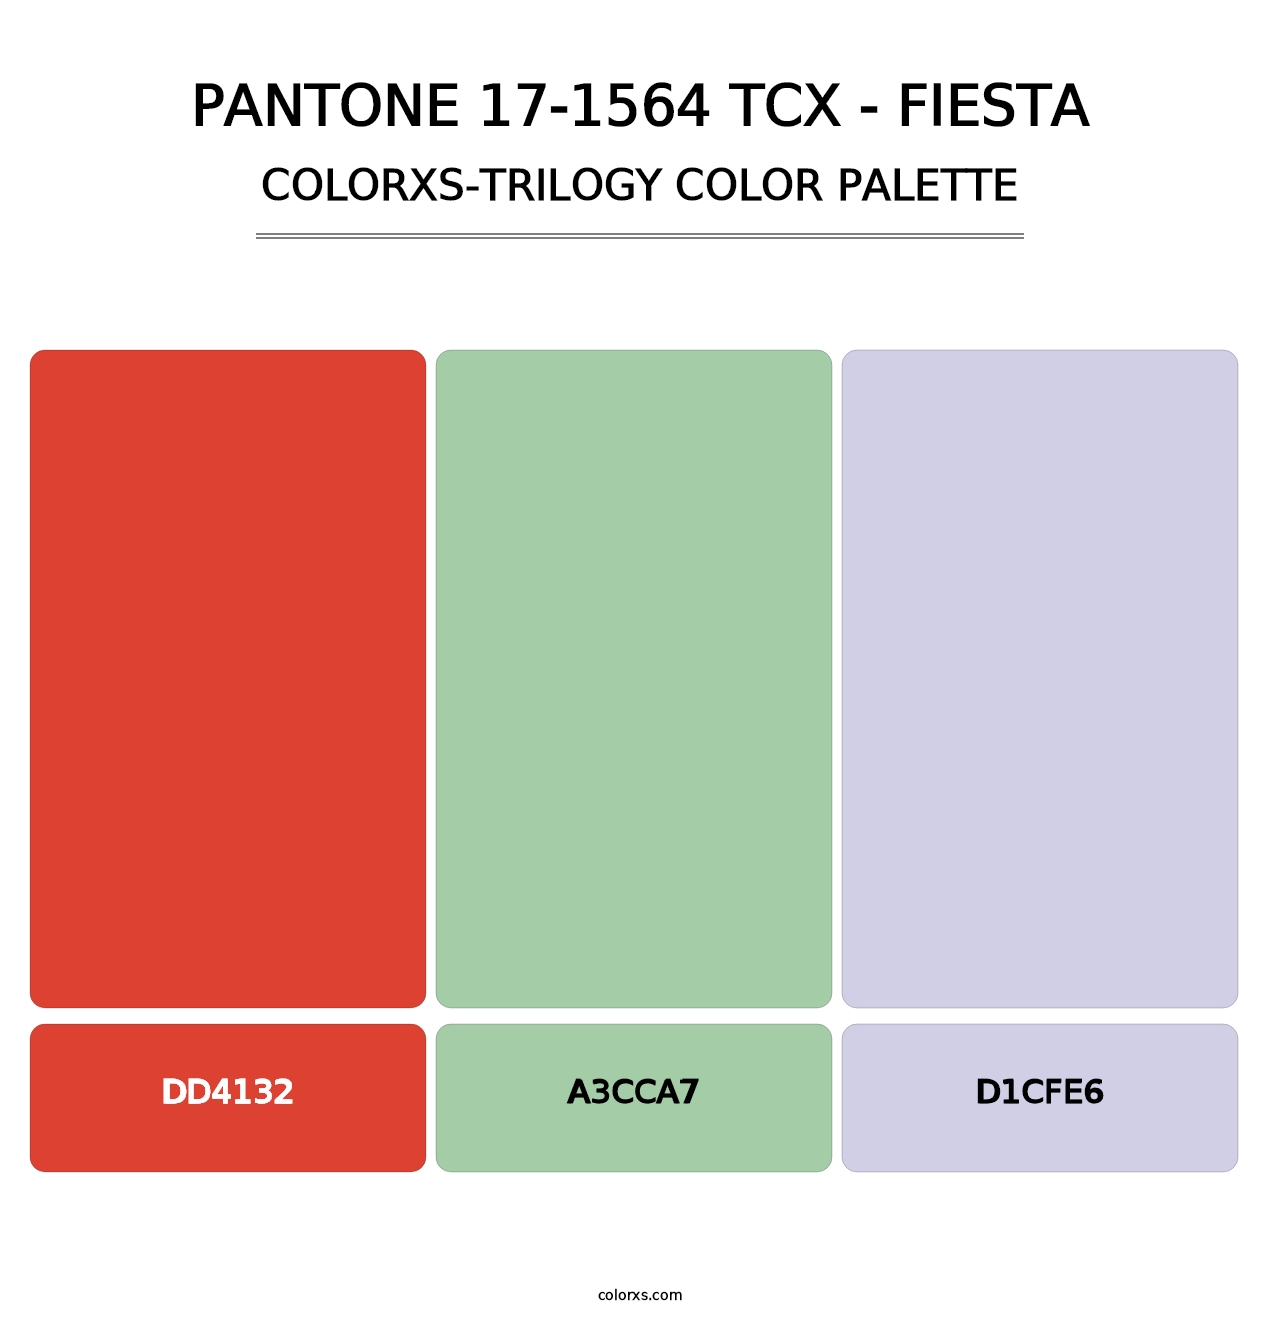 PANTONE 17-1564 TCX - Fiesta - Colorxs Trilogy Palette